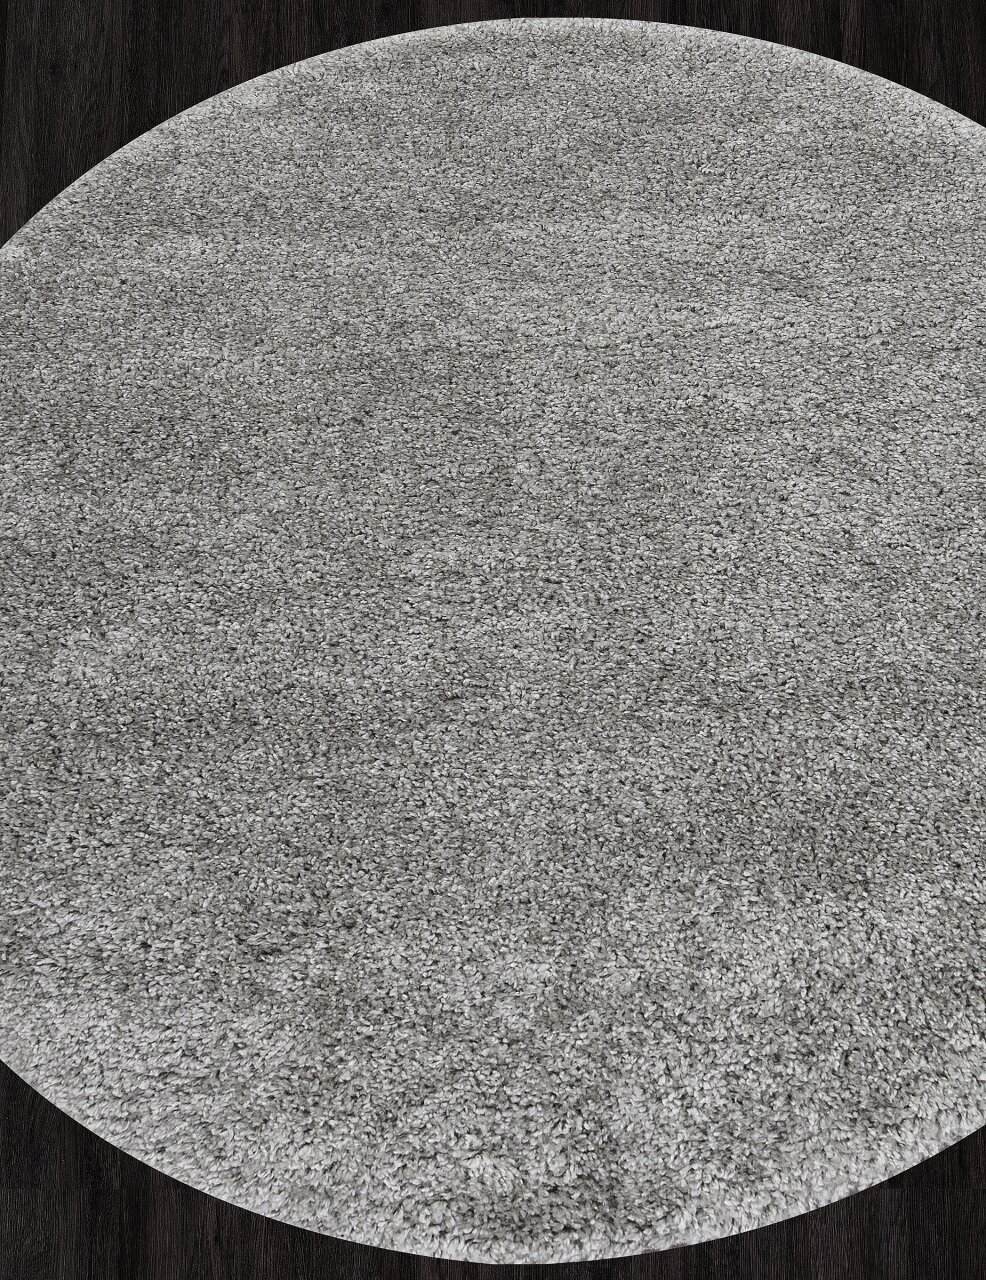 Ковер SHAGGY TREND - Круг LIGHT GRAY Ковер на пол, в гостиную, спальню, в ассортименте, Турция, Бельгия, Россия (150 см. на 150 см.)